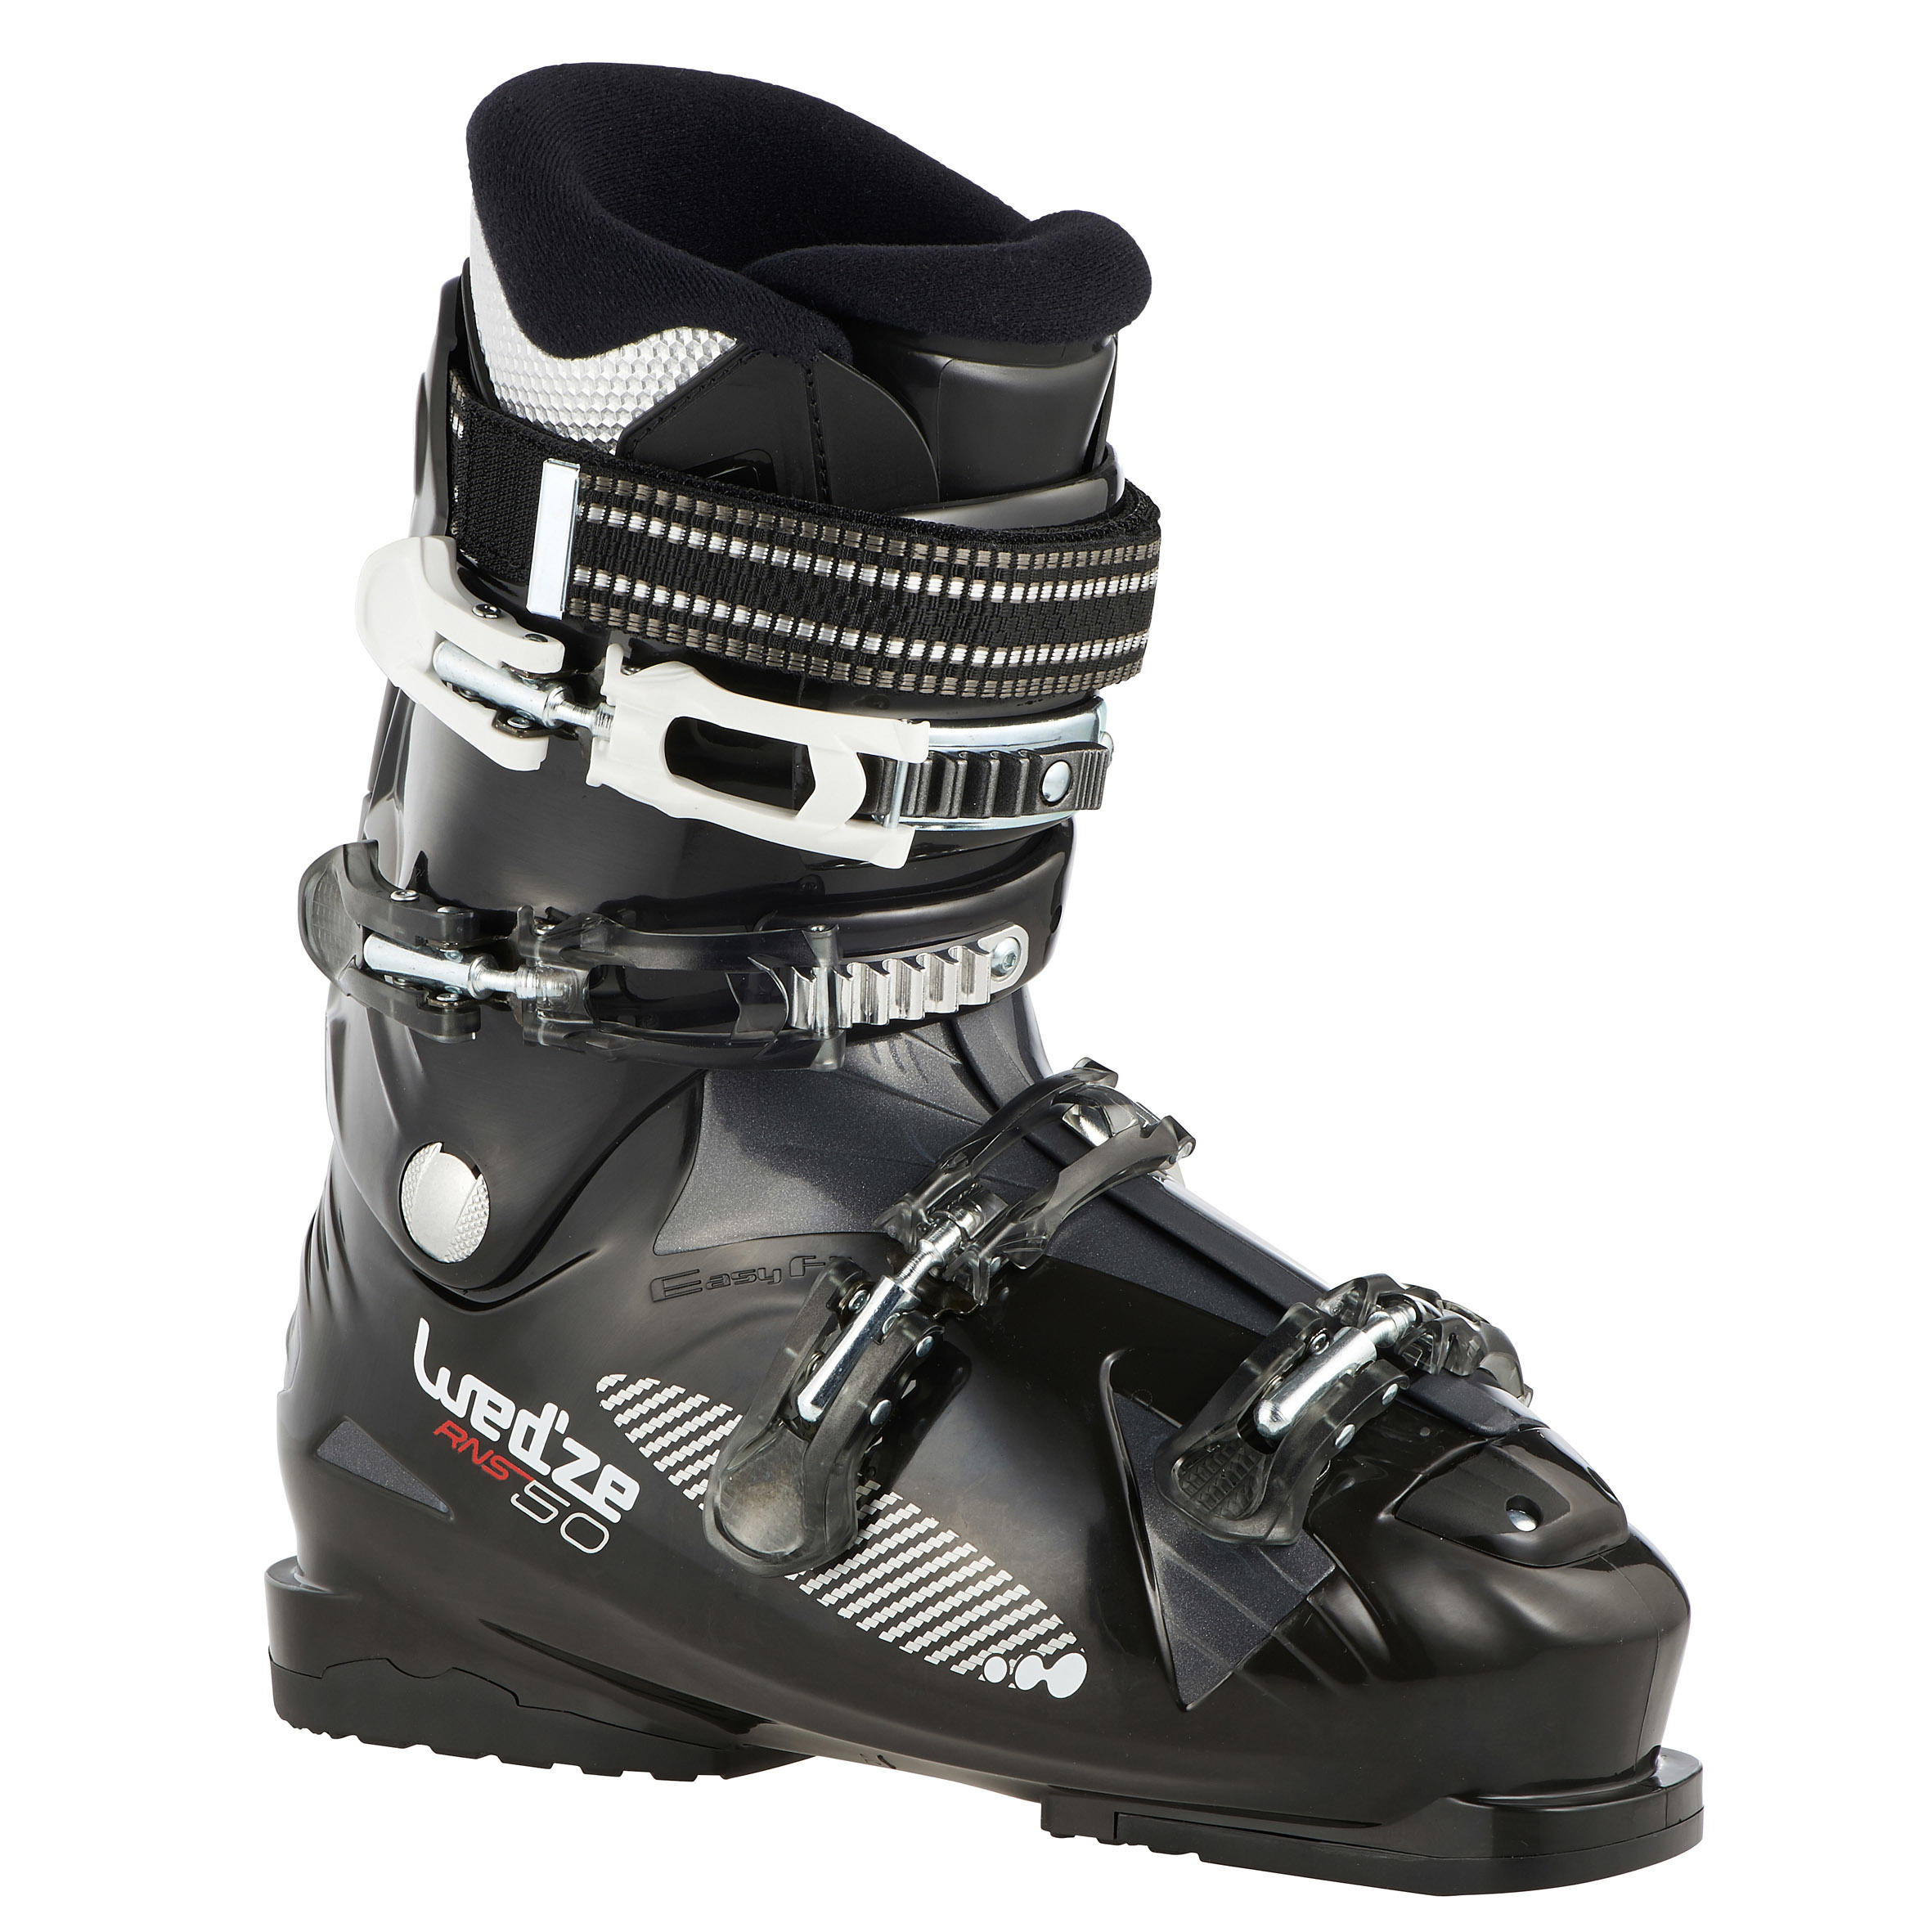 WEDZE RNS 50 Rental Men's Ski Boots